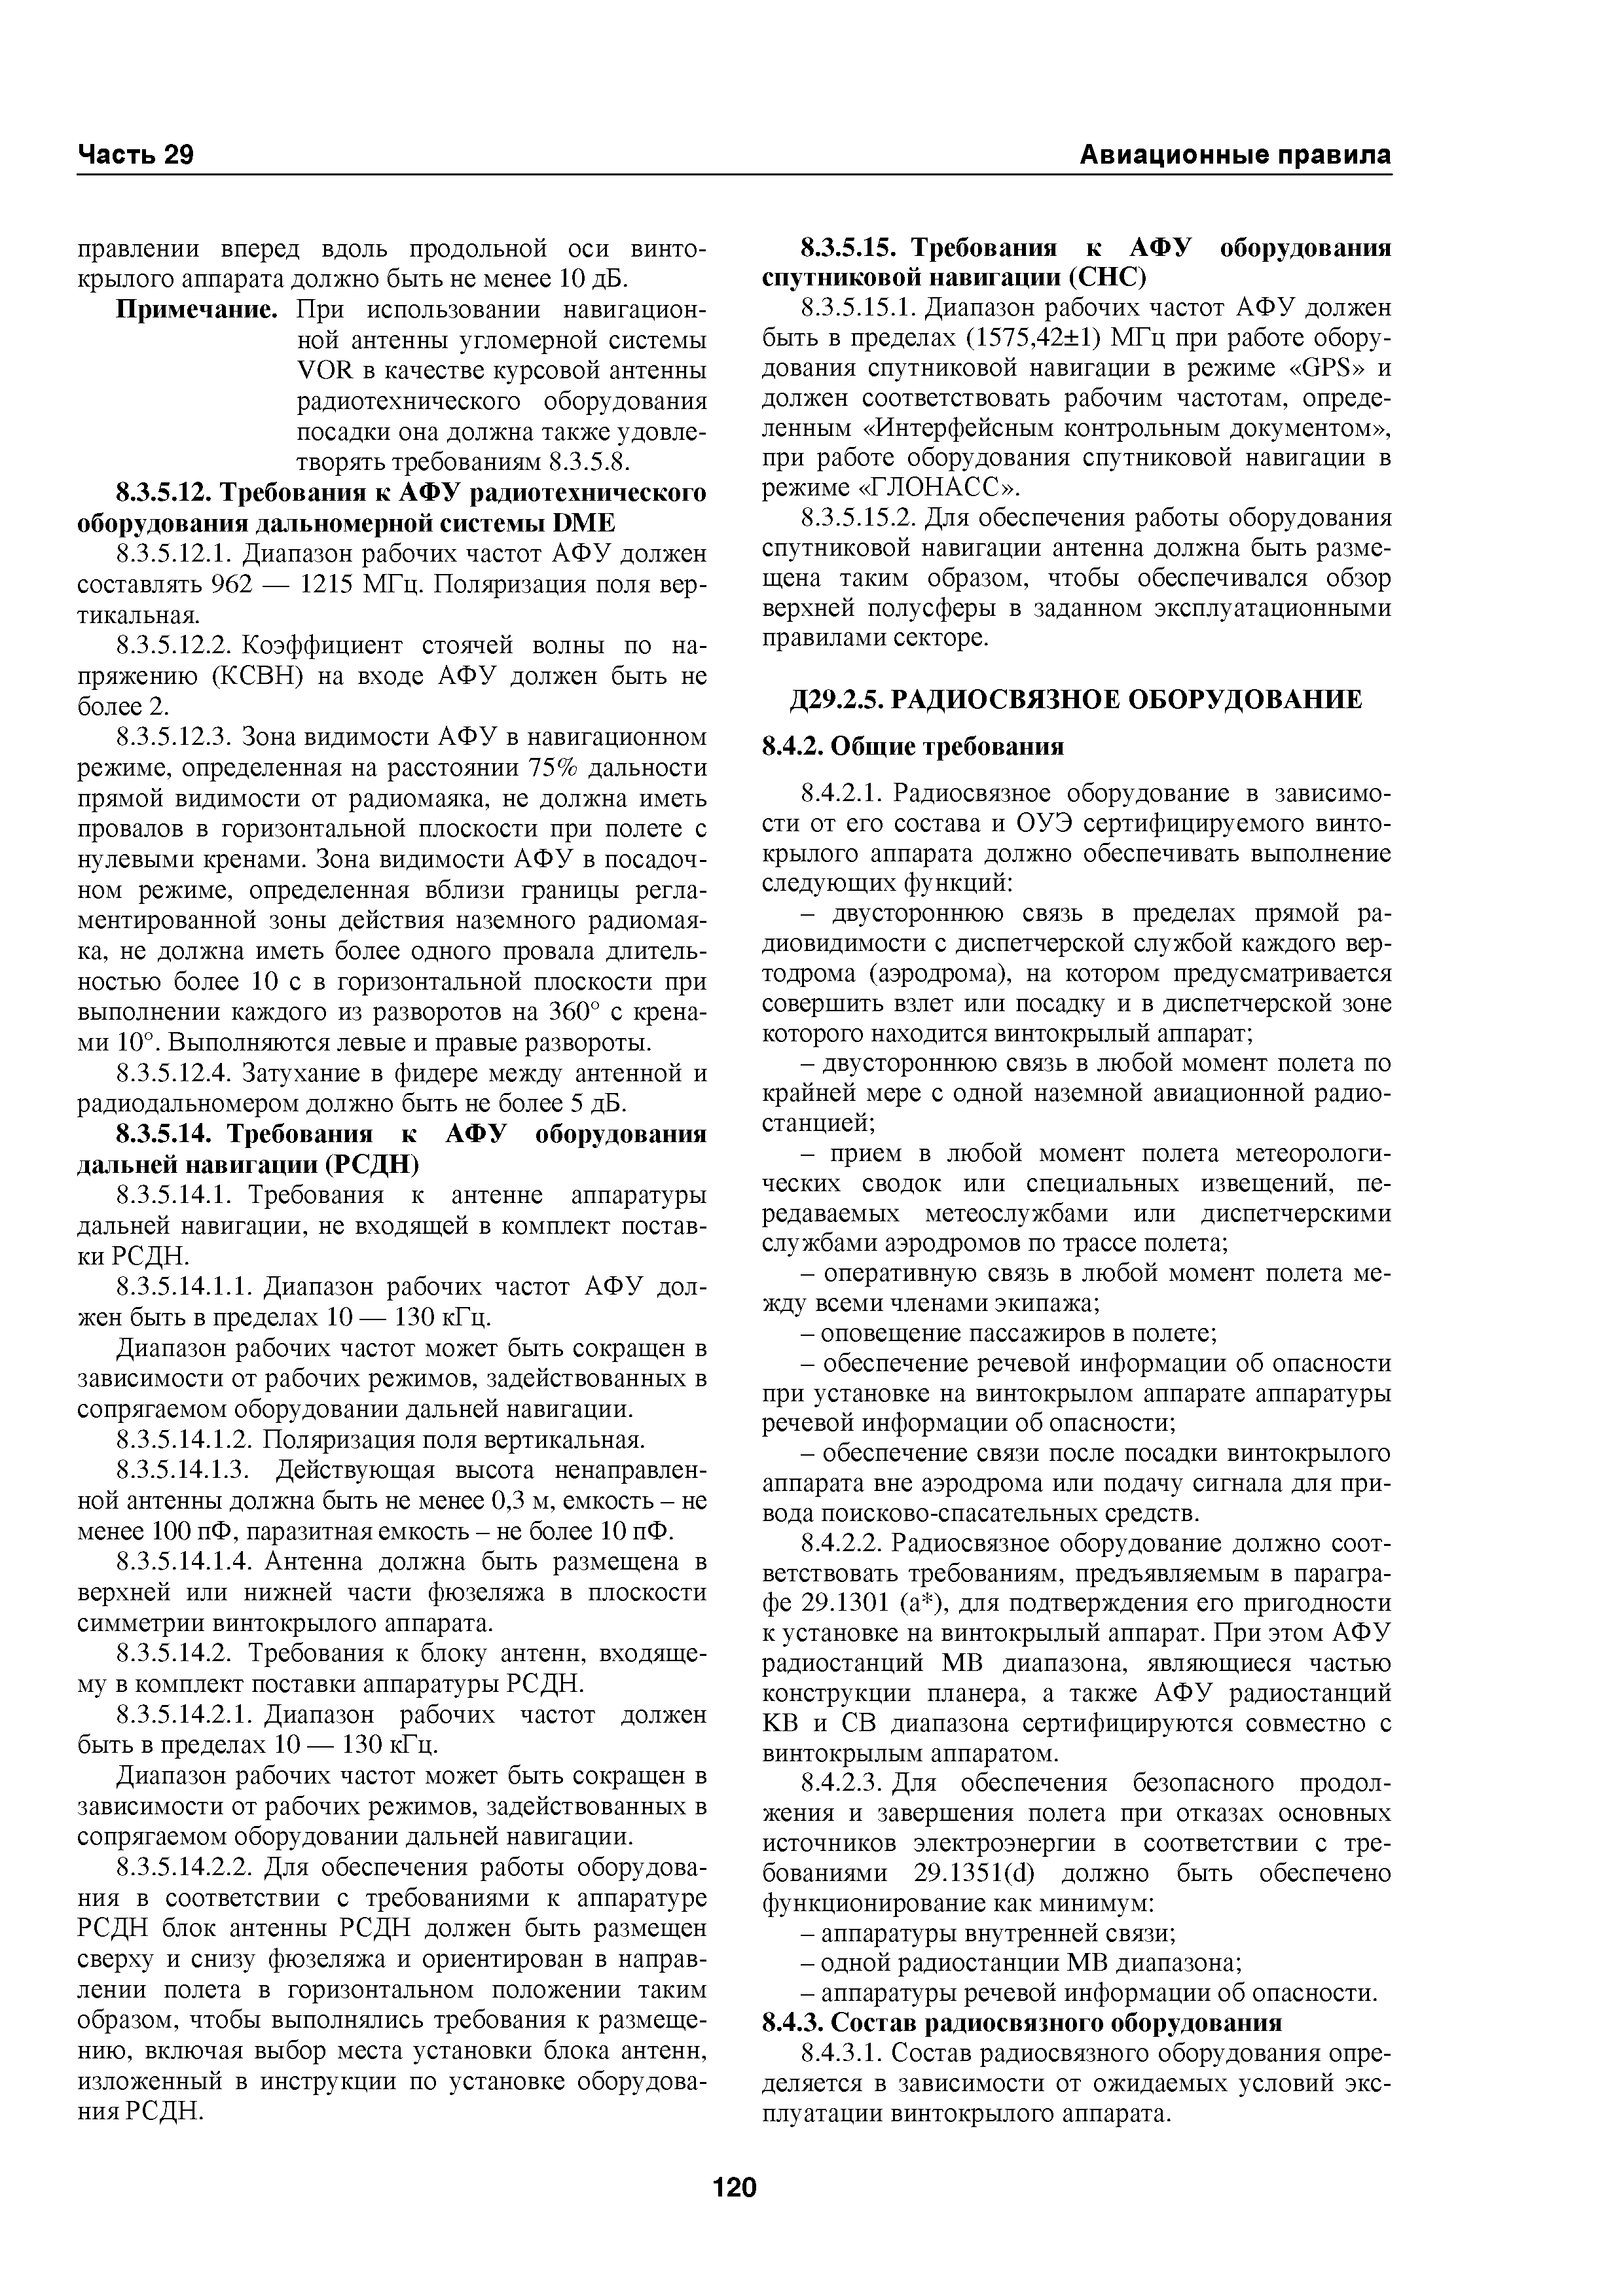 Авиационные правила Часть 29